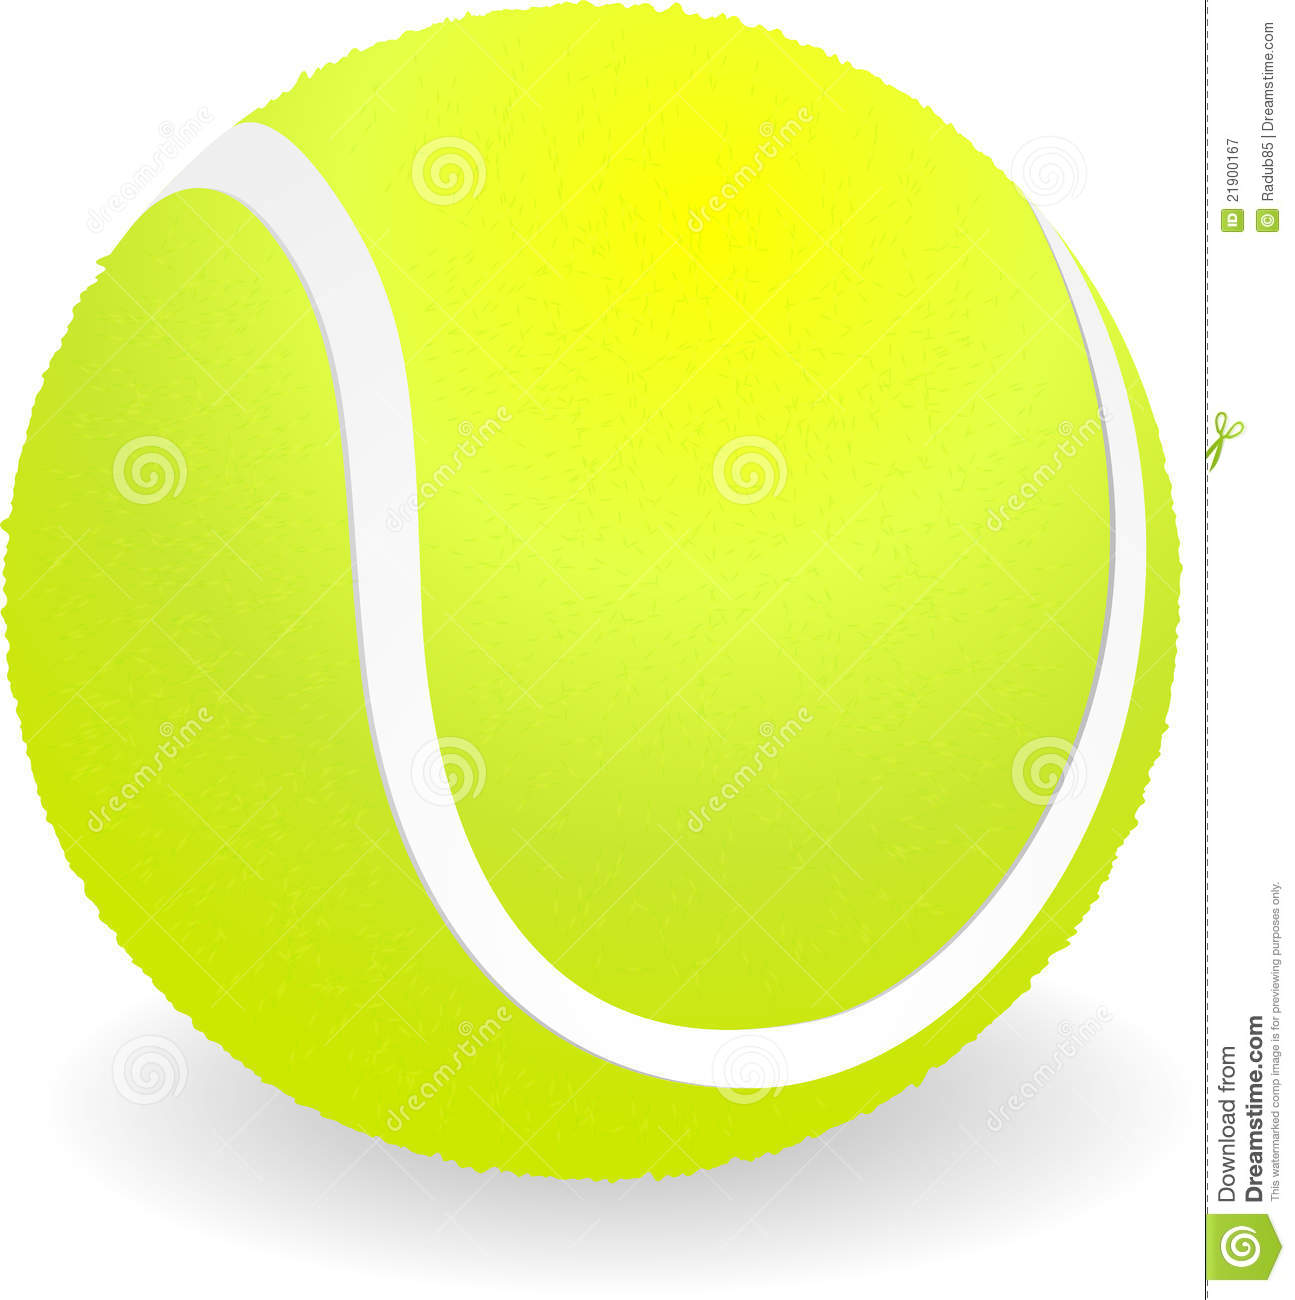 Free tennis ball clipart 